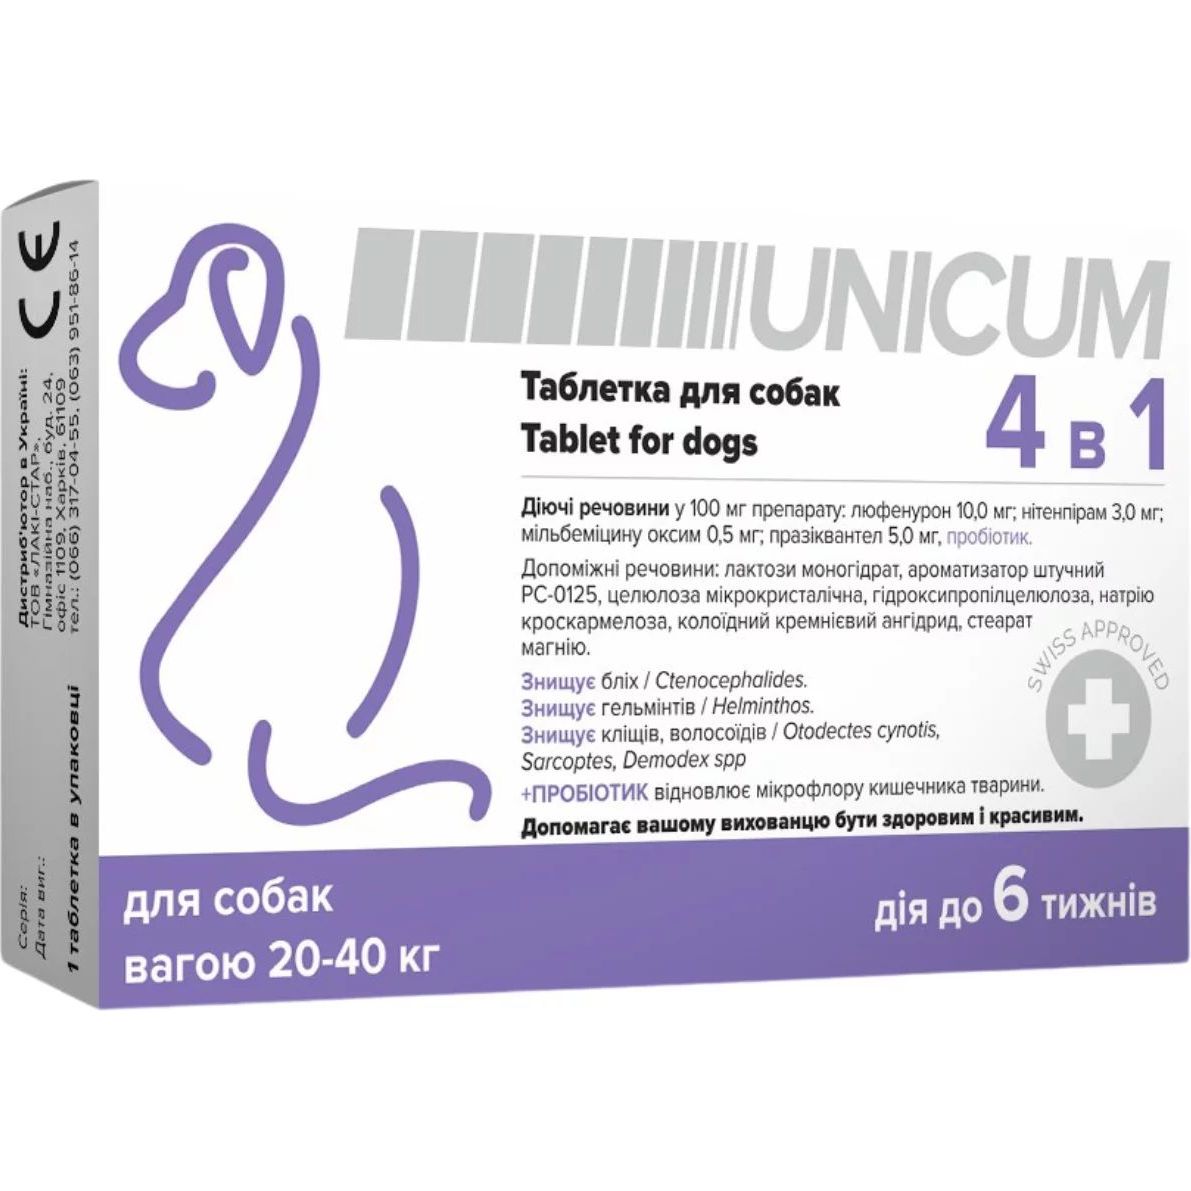 Таблетка для собак Unicum 4 в 1 от блох, клещей, гильминтов, с пробиотиком 20-40 кг - фото 1